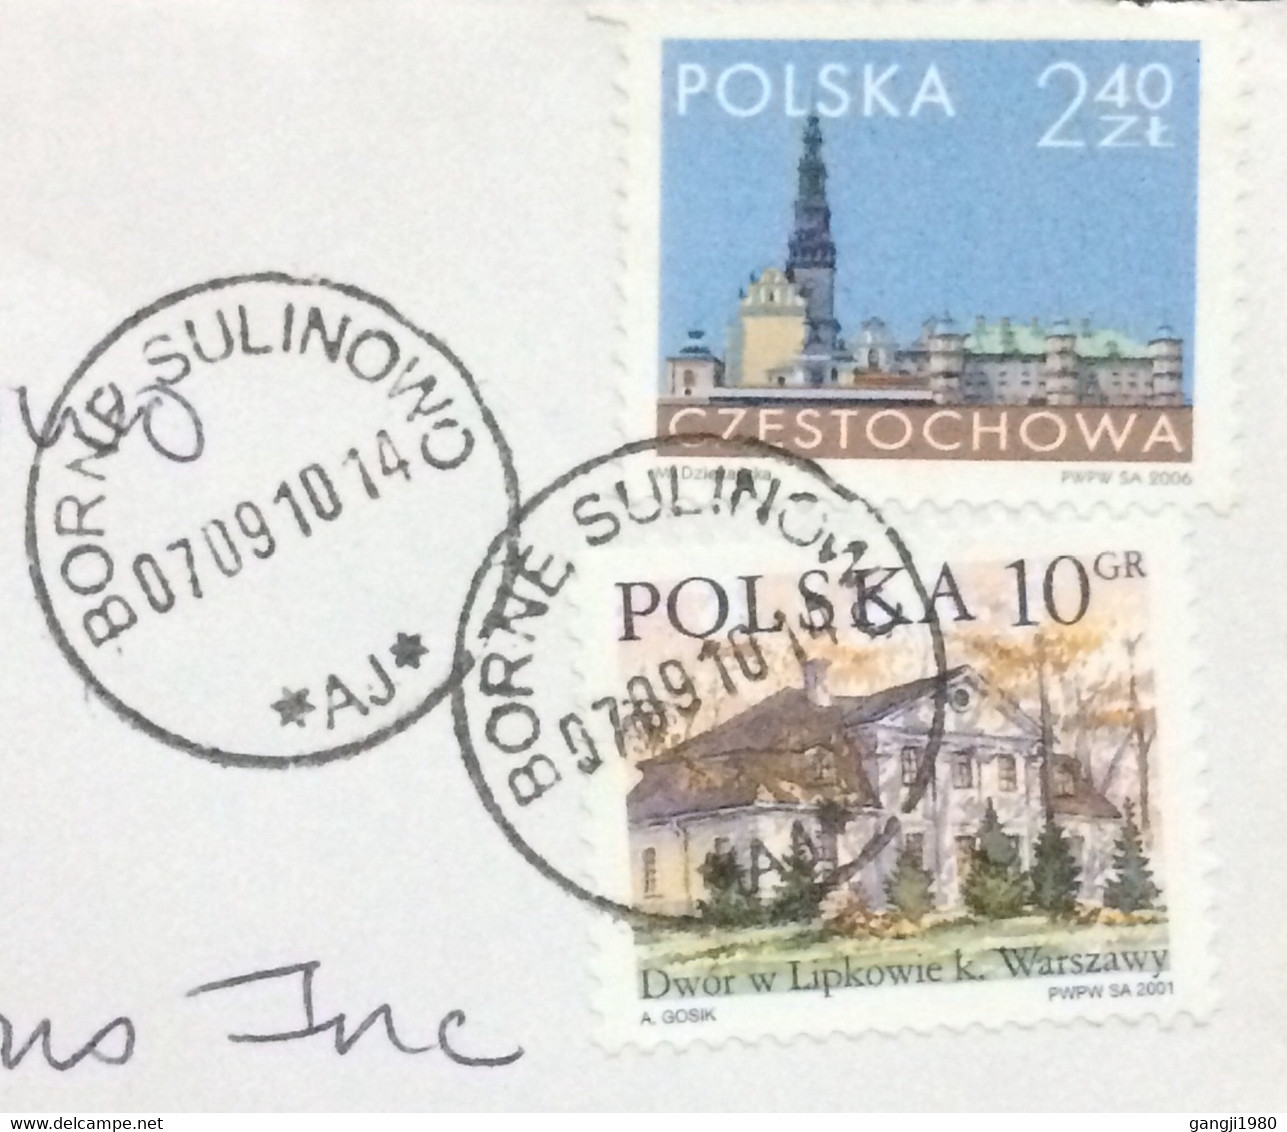 POLAND 2010, COVER USED TO USA, STAMP CITY VIEW CZĘSTOCHOWA & DWOR W LIPKOWIE, VILLAGE BORNE SULINOWO CANCEL. - Covers & Documents